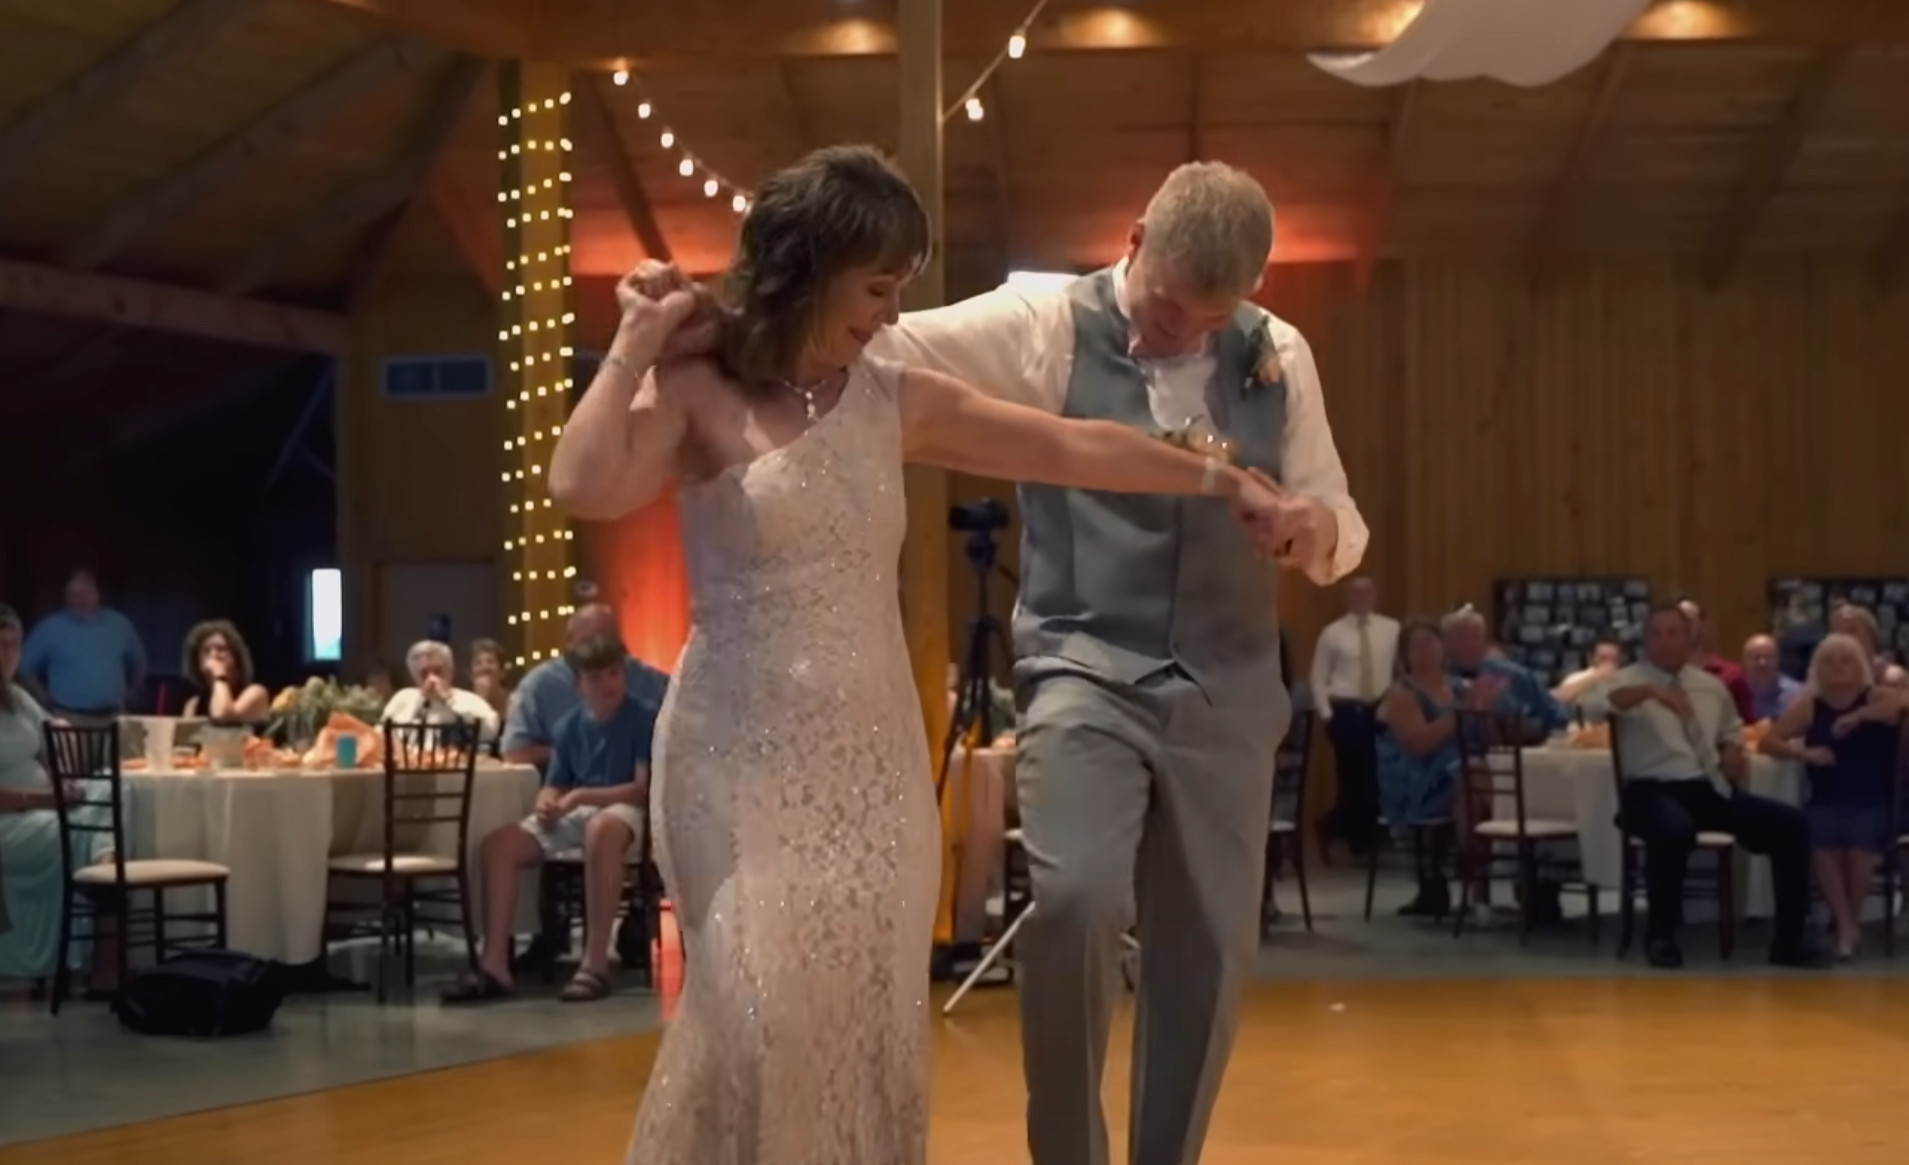 Taniec pana młodego z matką - nowy hit weselny! Zobacz, jak ta para w jednym tańcu rozśmieszyła tysiące ludzi na całym świecie!